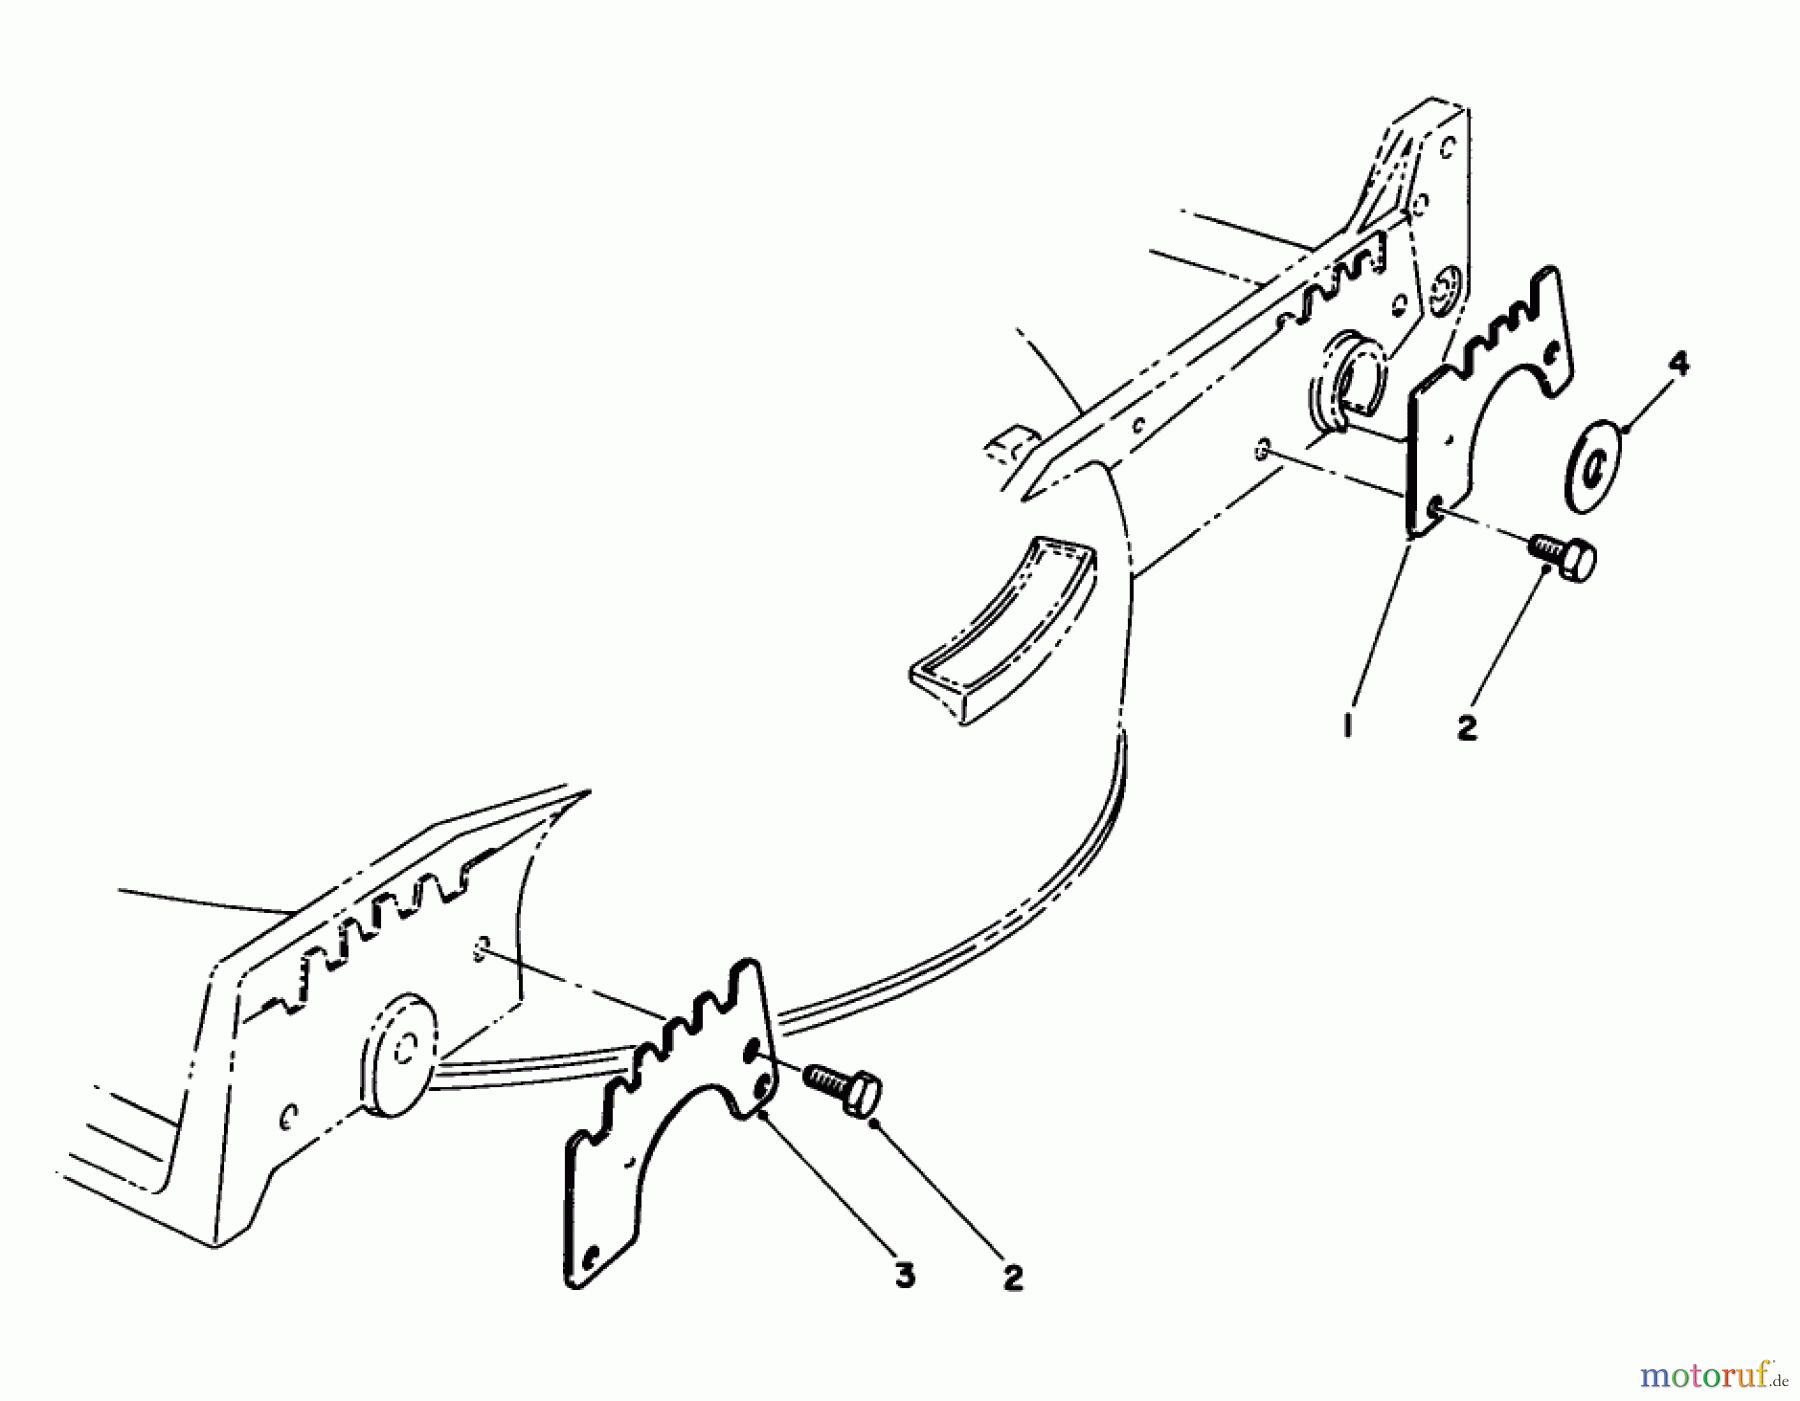  Toro Neu Mowers, Walk-Behind Seite 1 20217 - Toro Lawnmower, 1991 (1000001-1999999) WEAR PLATE MODEL NO. 49-4080 (OPTIONAL)